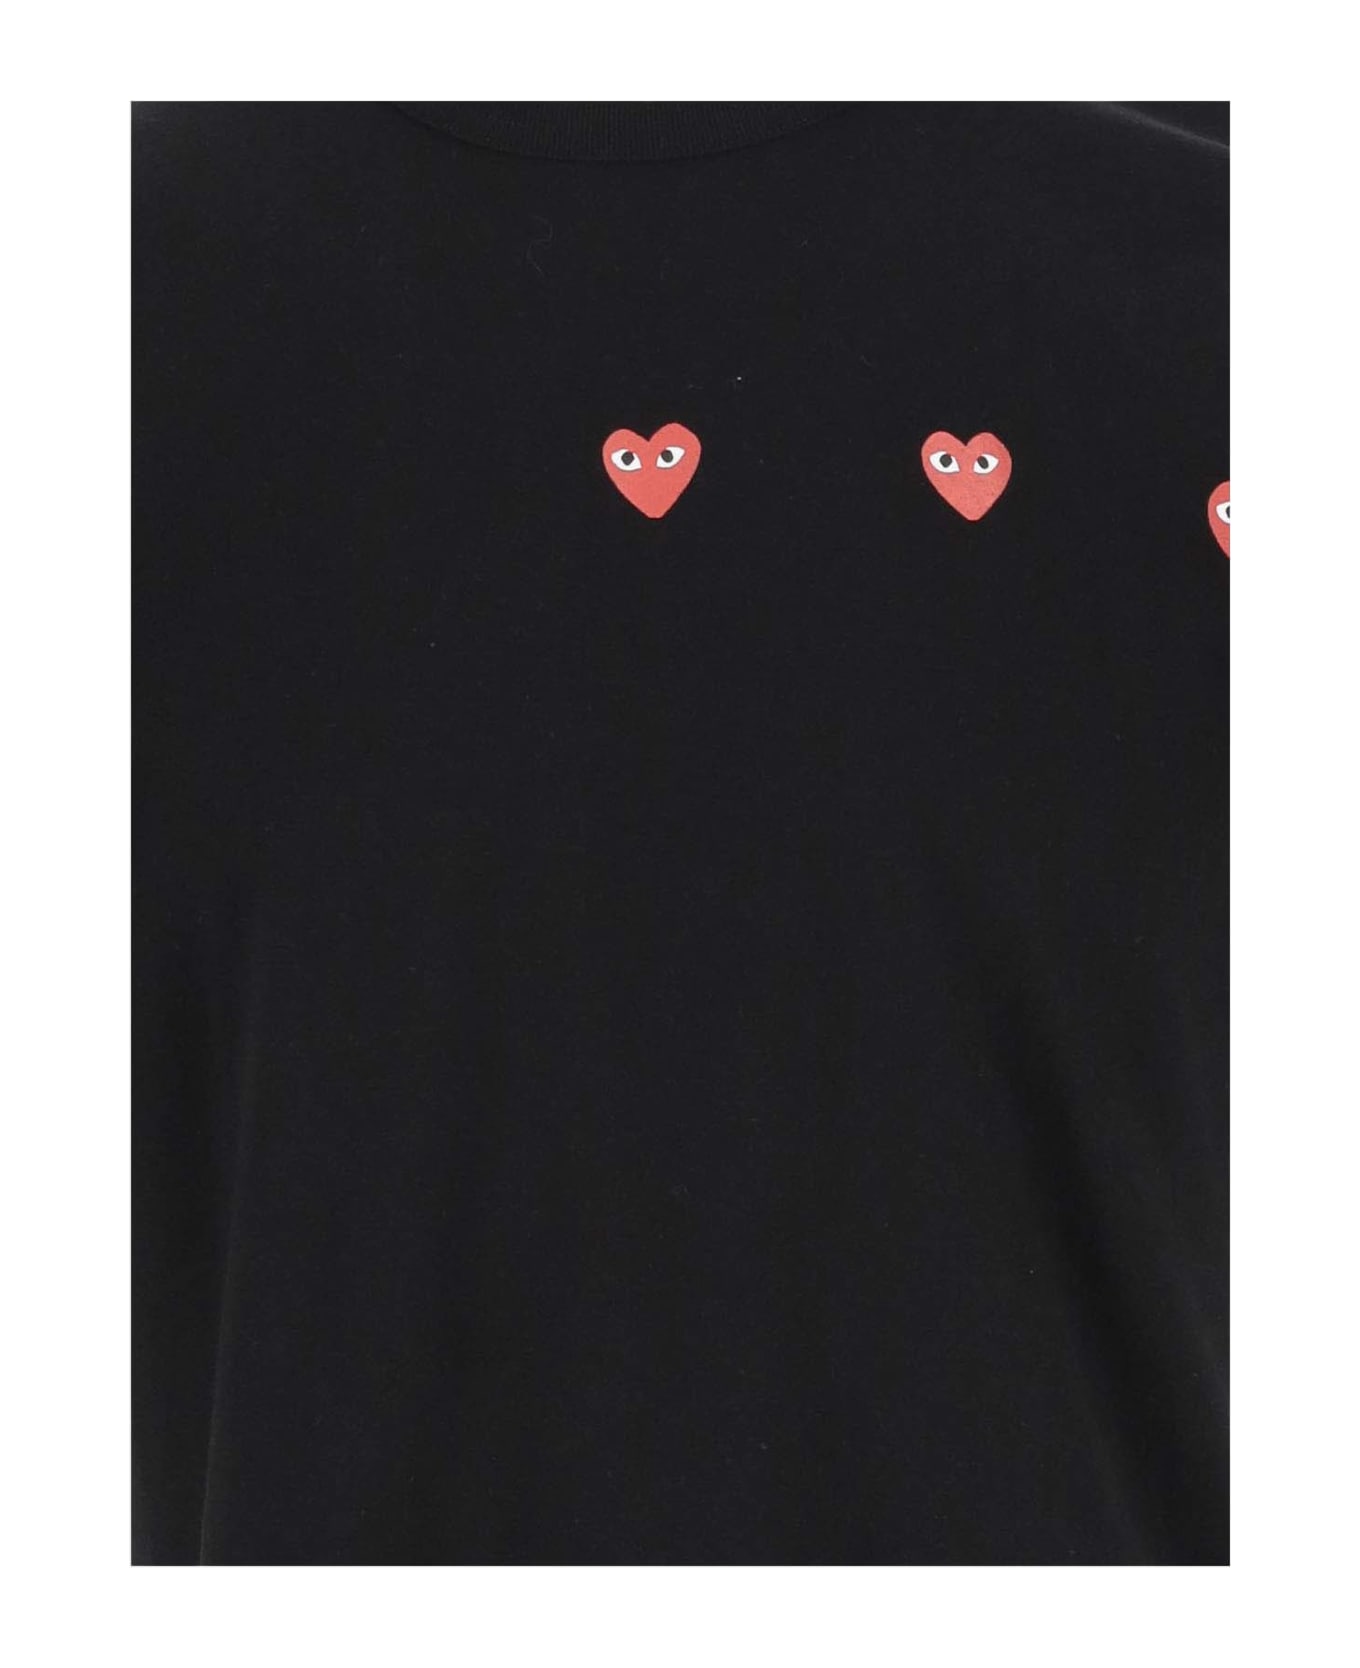 Comme des Garçons Cotton T-shirt With Logo - Black